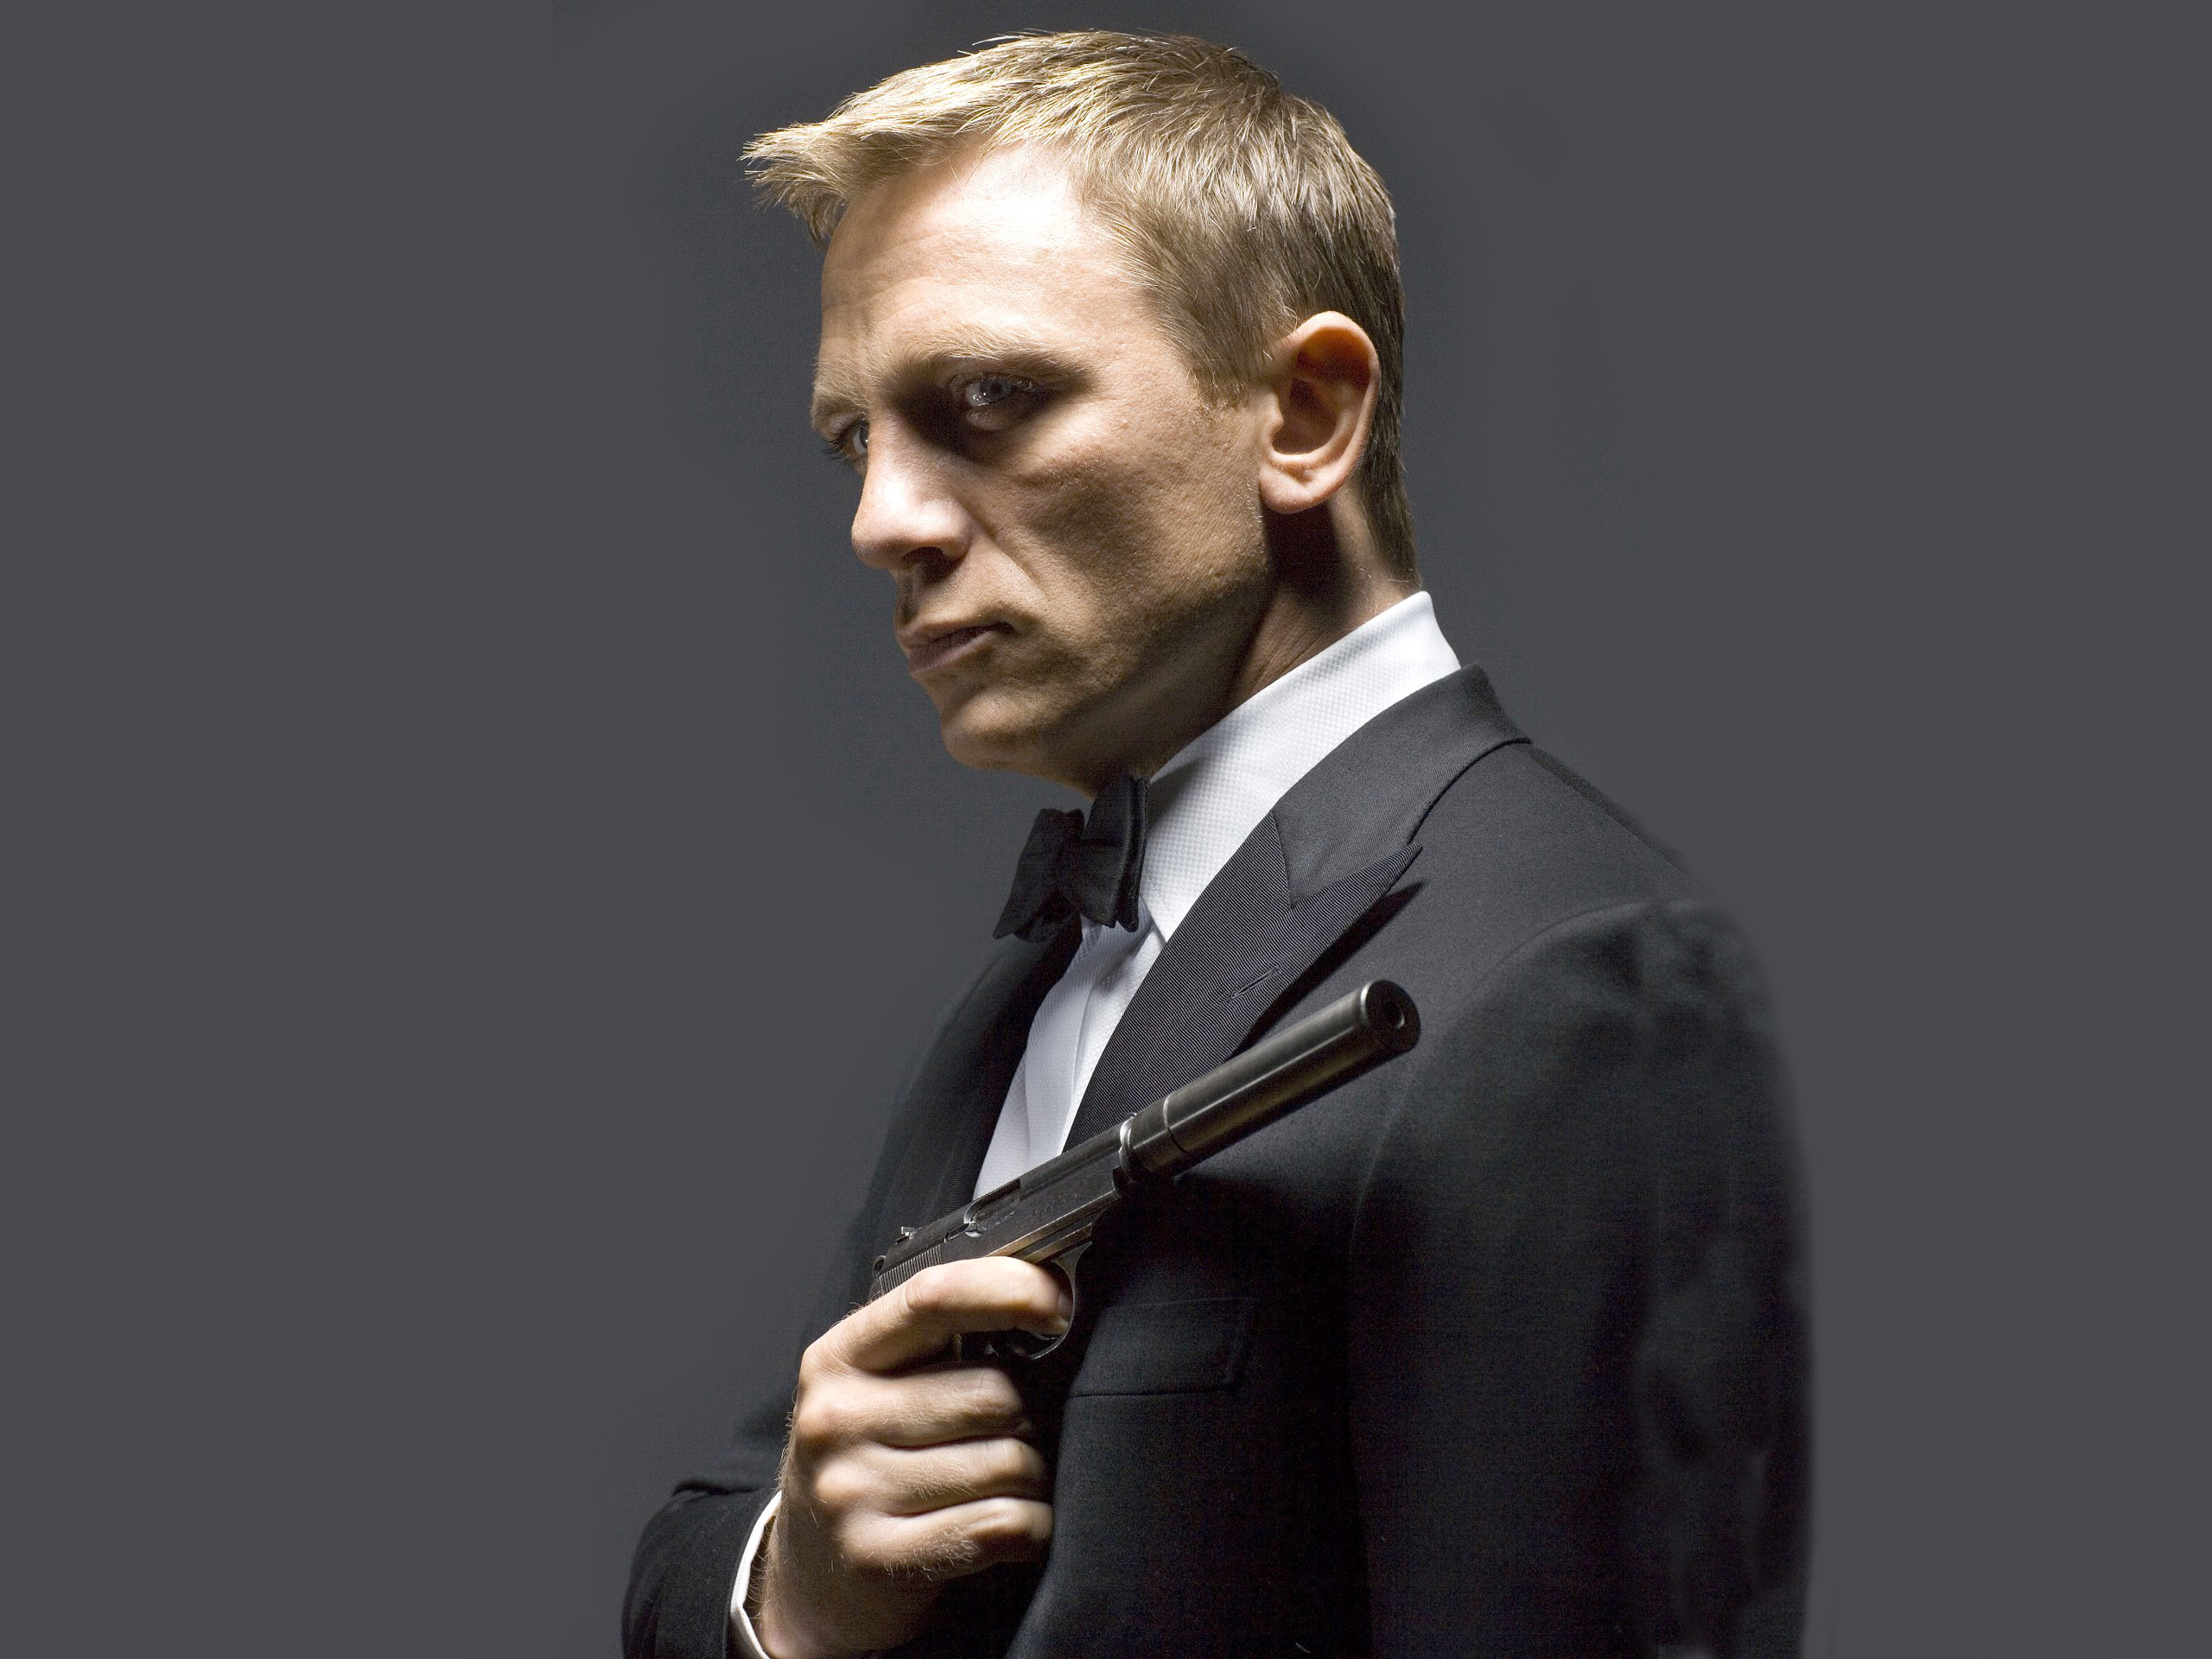 Daniel Craig: James Bond 007, A Secret Service agent. 2560x1920 HD Wallpaper.